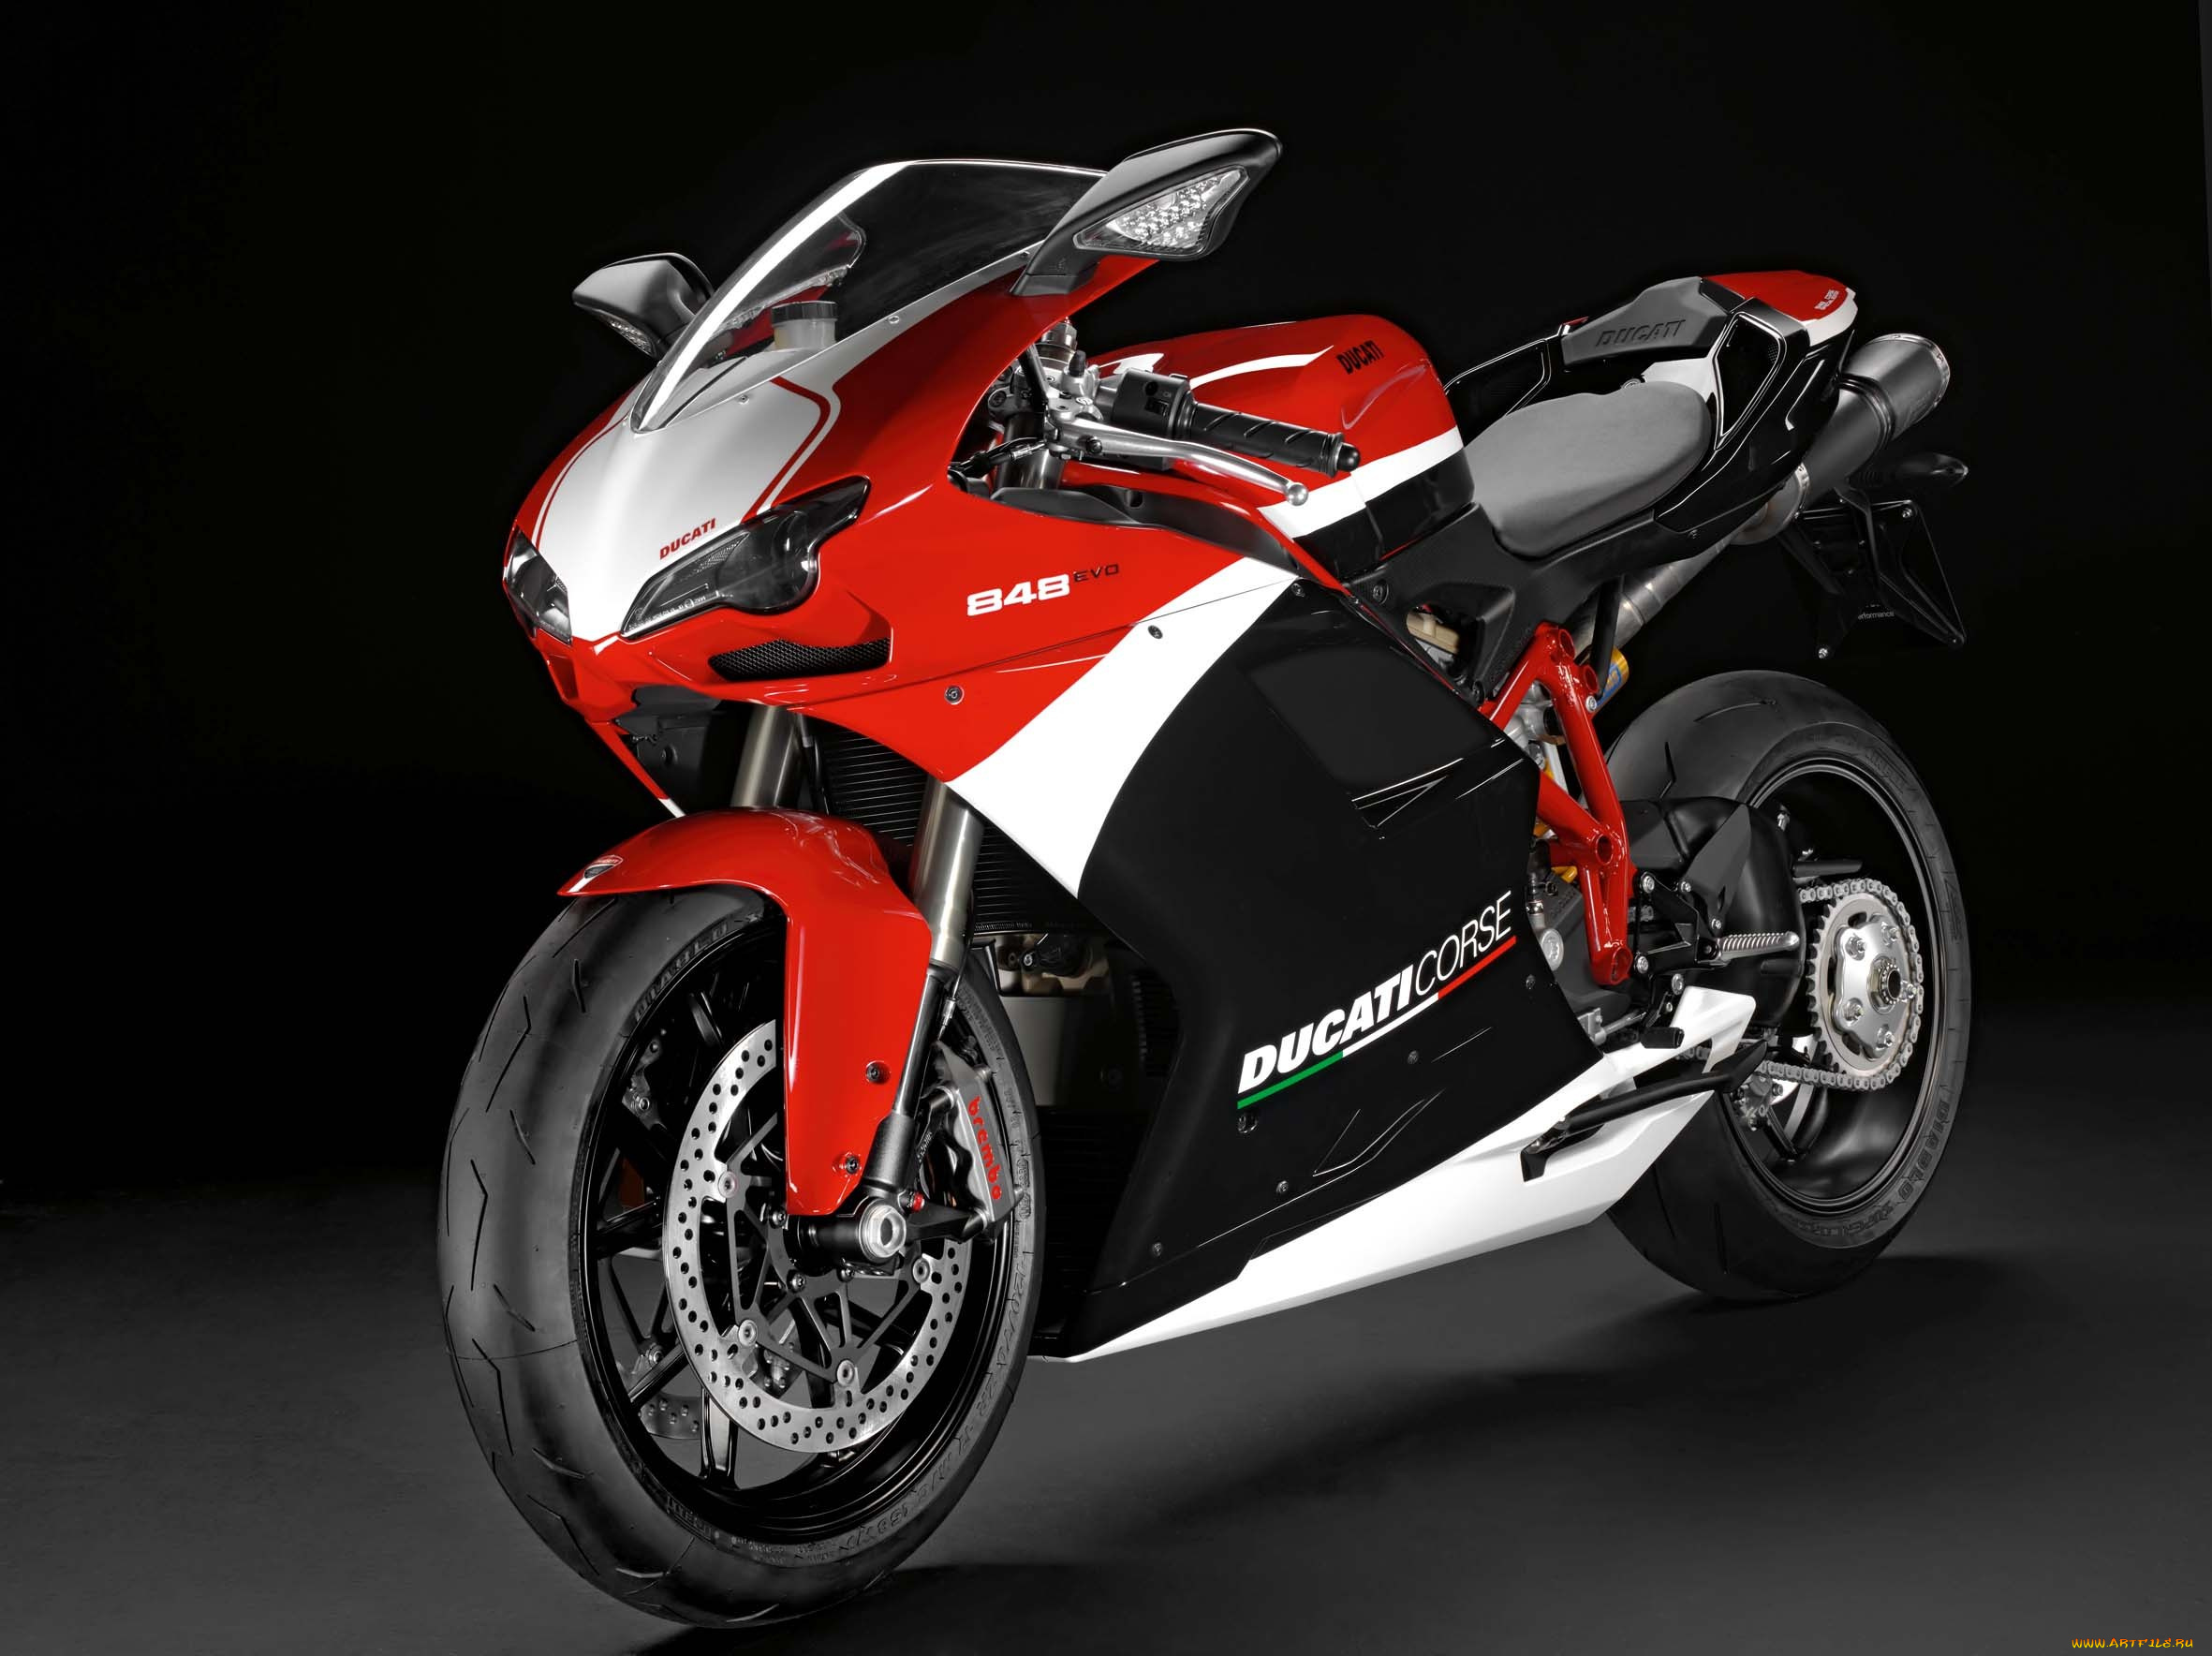 2012-ducati-superbike-848-evo-corse-special-edition, мотоциклы, ducati, corse